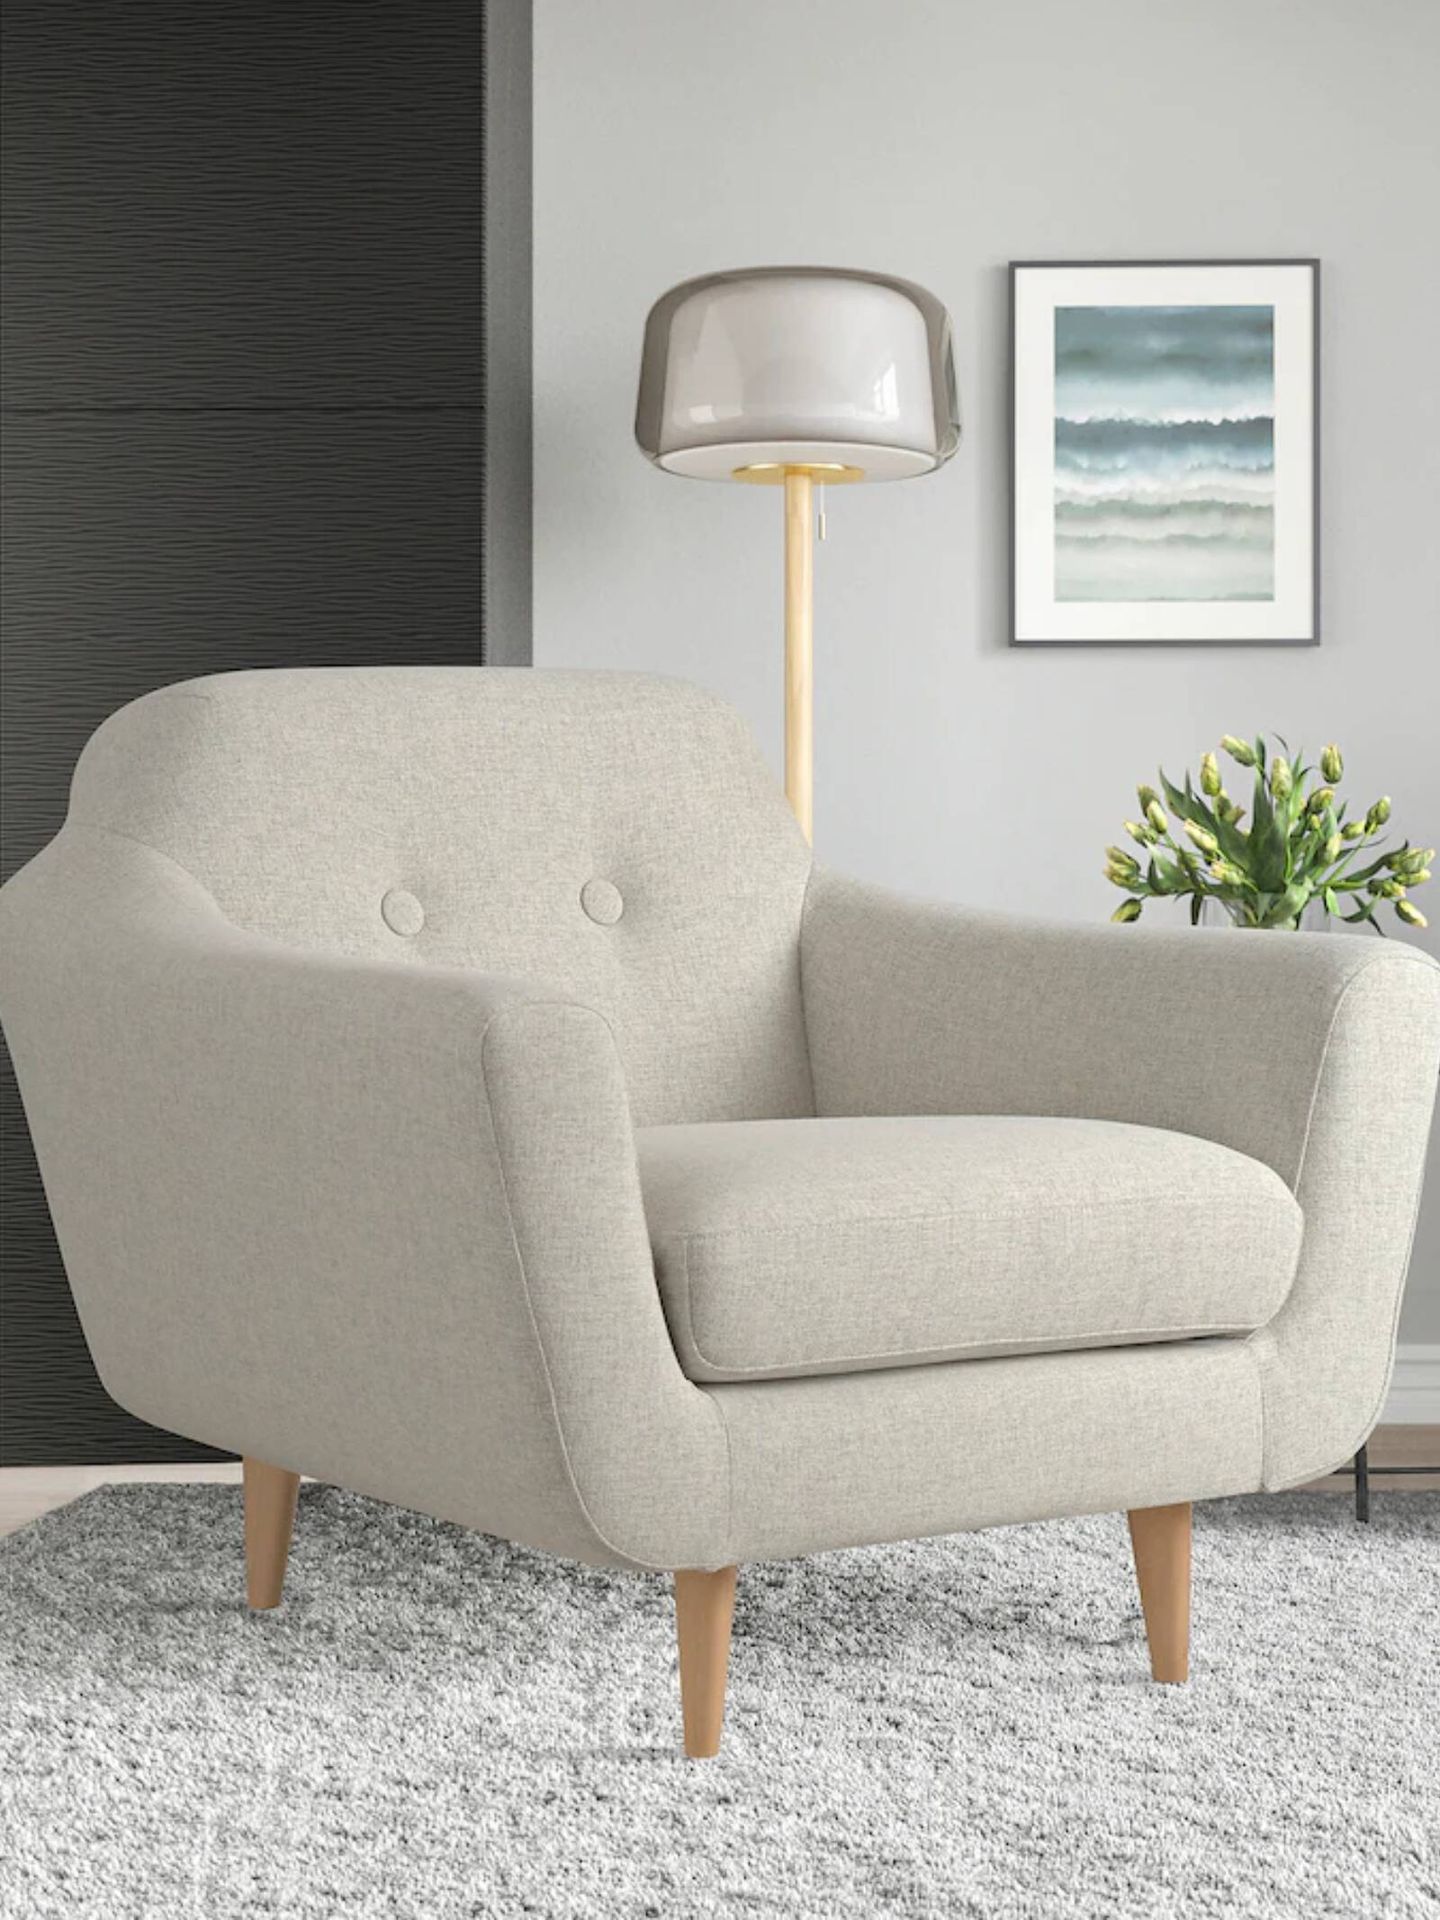 El nuevo mueble de Ikea es este sillón para todas las casas. (Cortesía)